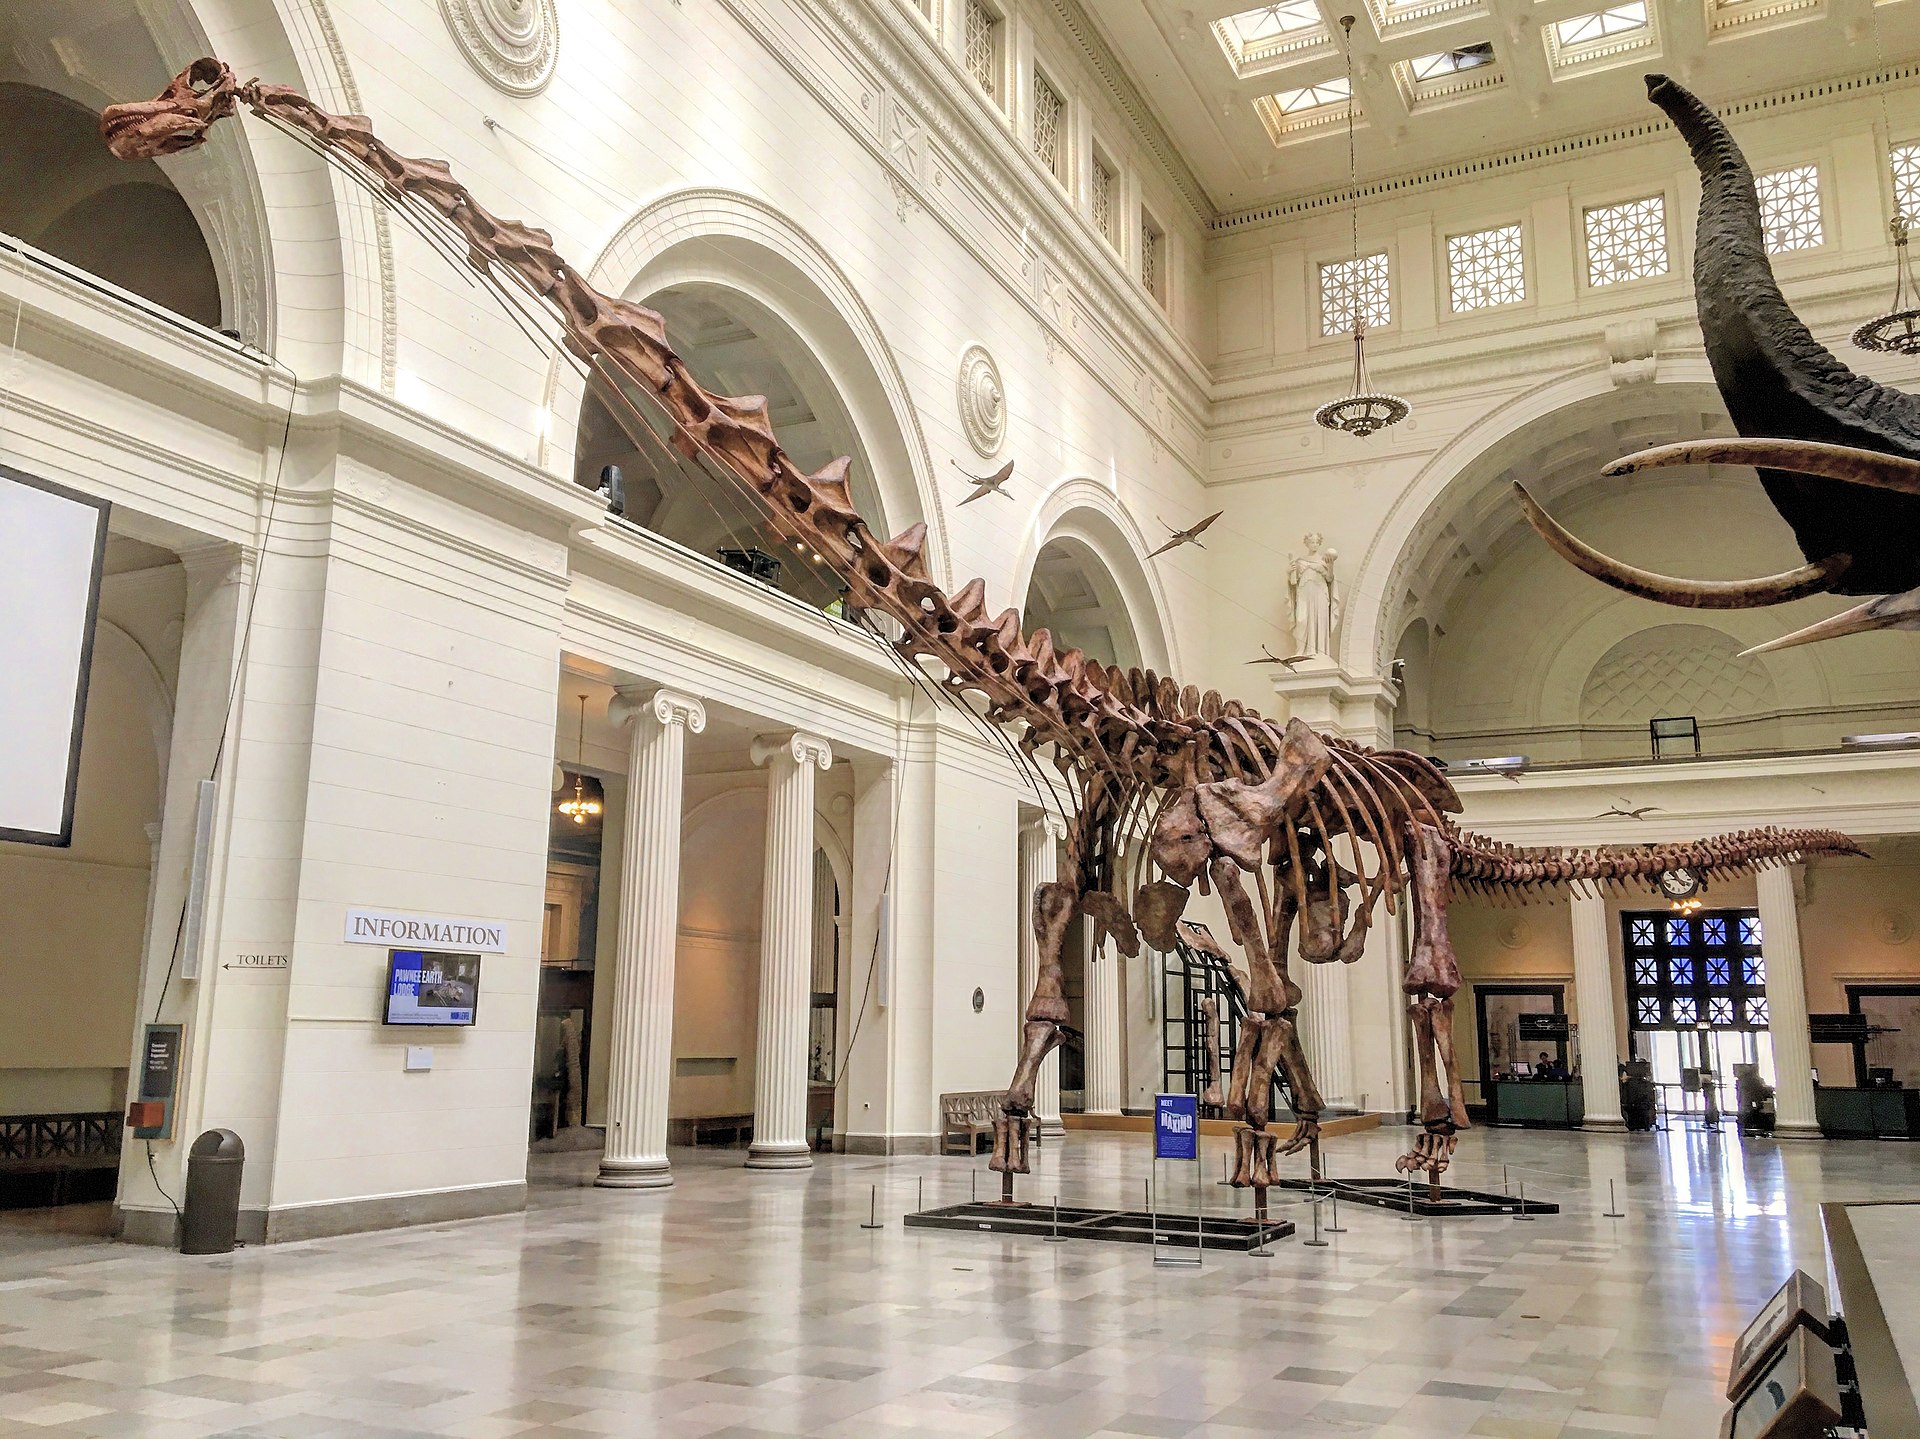 Pokud by byl záhadný bruhatkajosaurus stavěn podobně jako argentinský Patagotitan mayorum (jehož kostra je na snímku), pak by jeho hmotnost mohla dosáhnout až nerealistických 240 tun. Kredit: Zissoudisctrucker; Wikipedia (CC BY-SA 4.0)